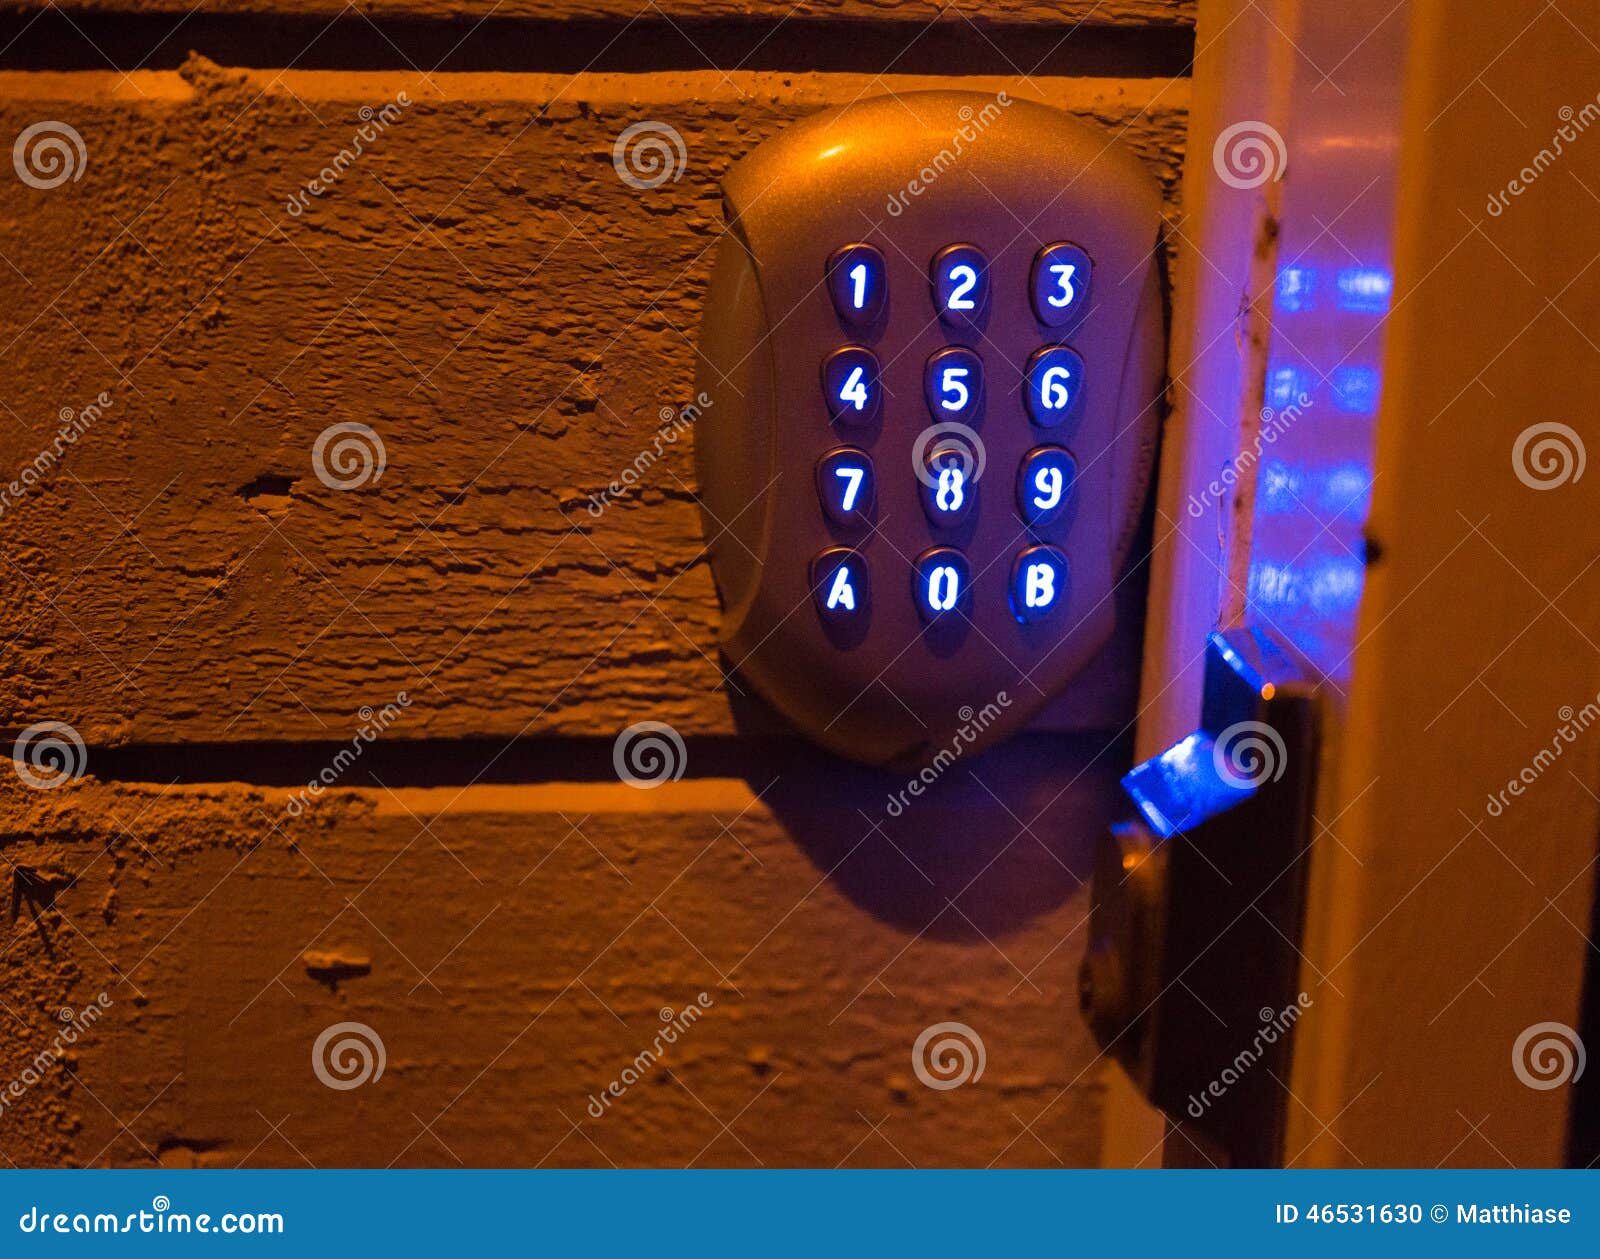 door code lock